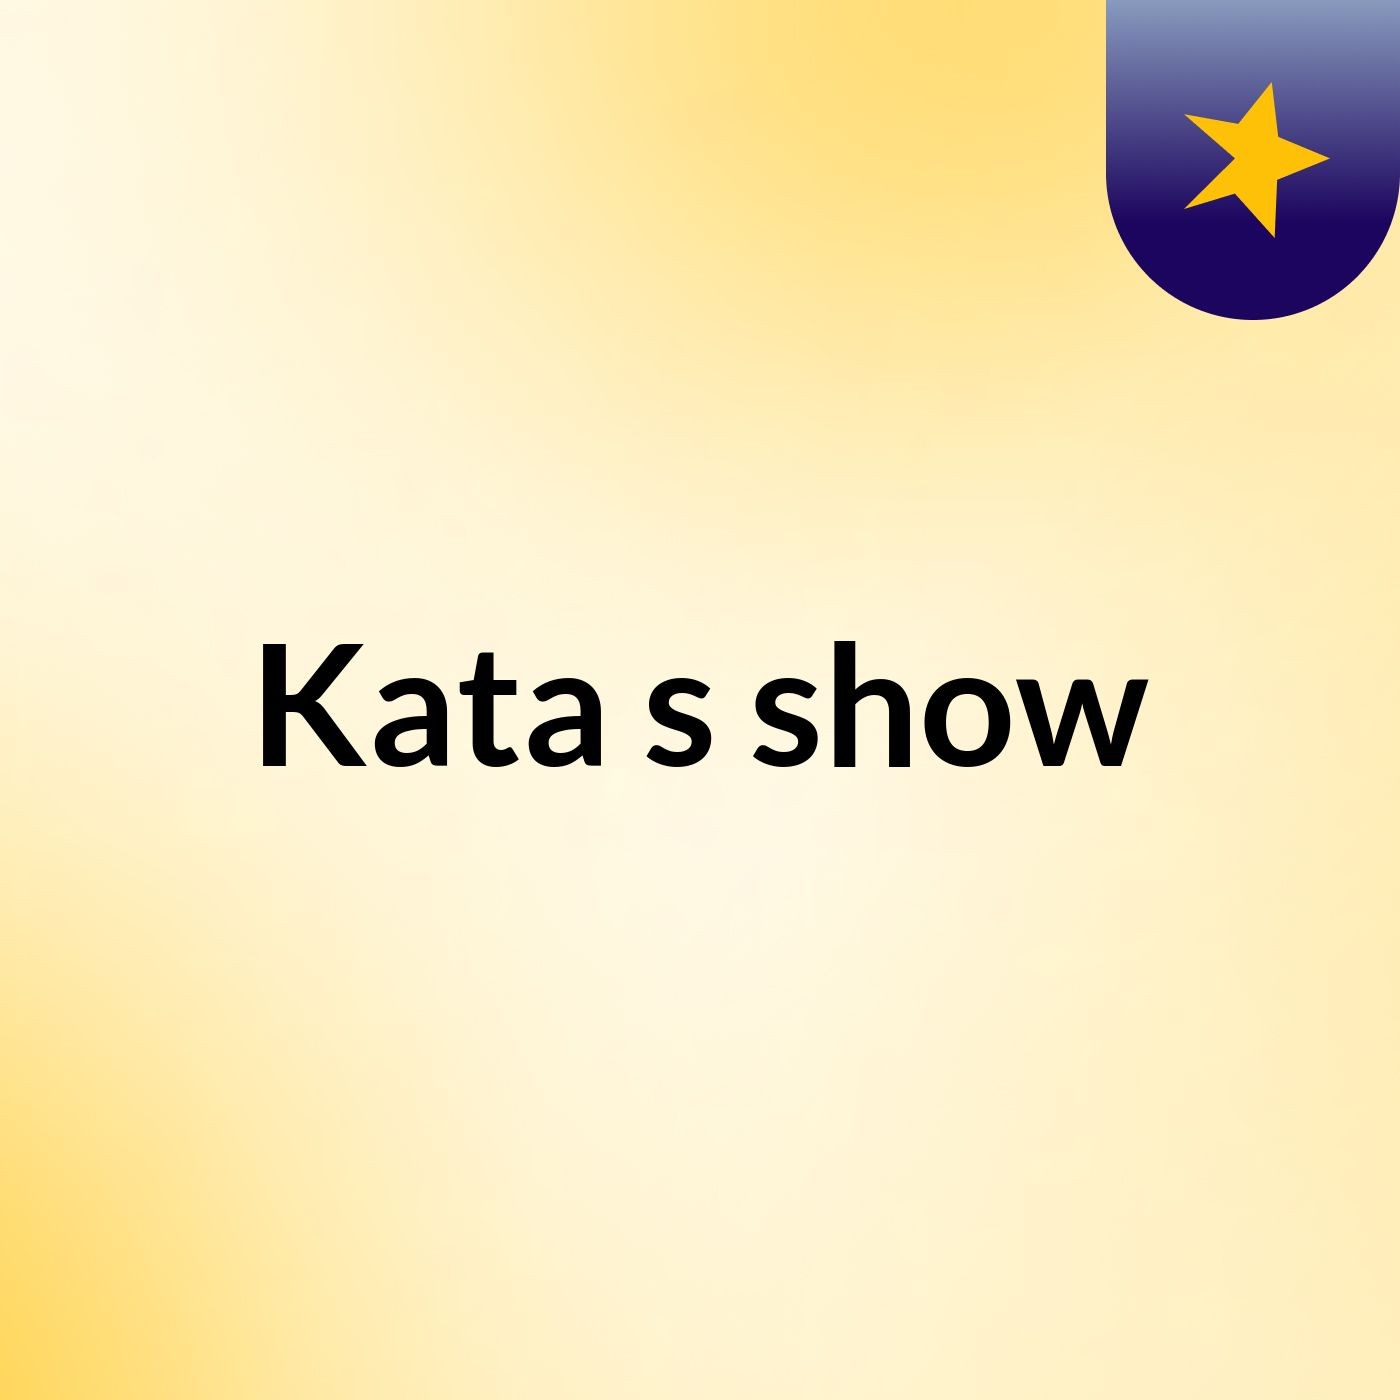 Kata's show